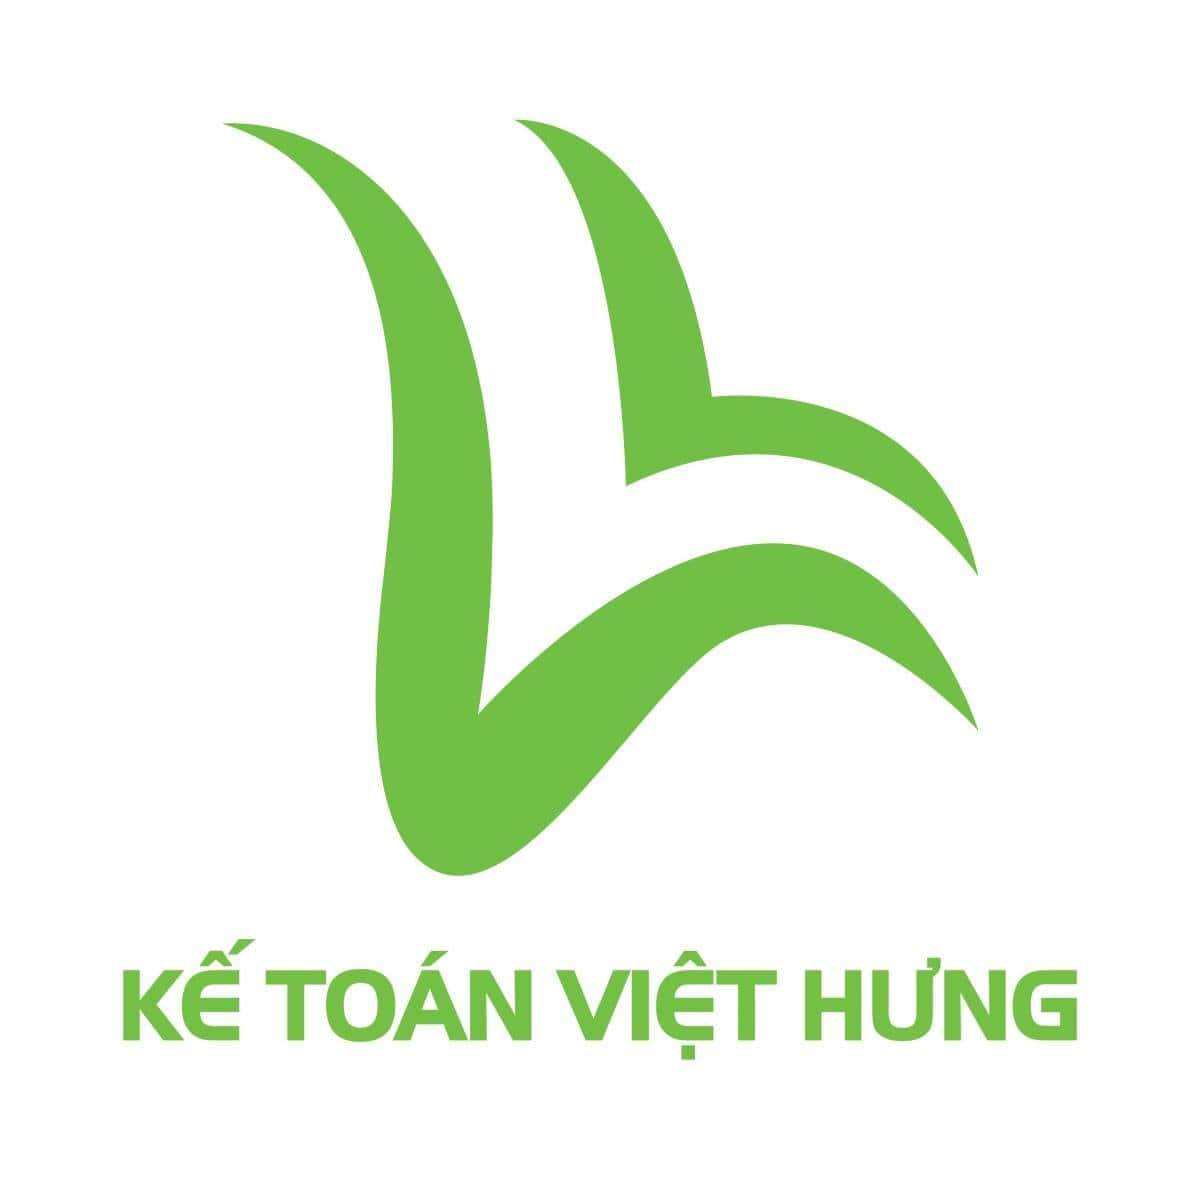 Trung tâm Kế toán Việt Hưng